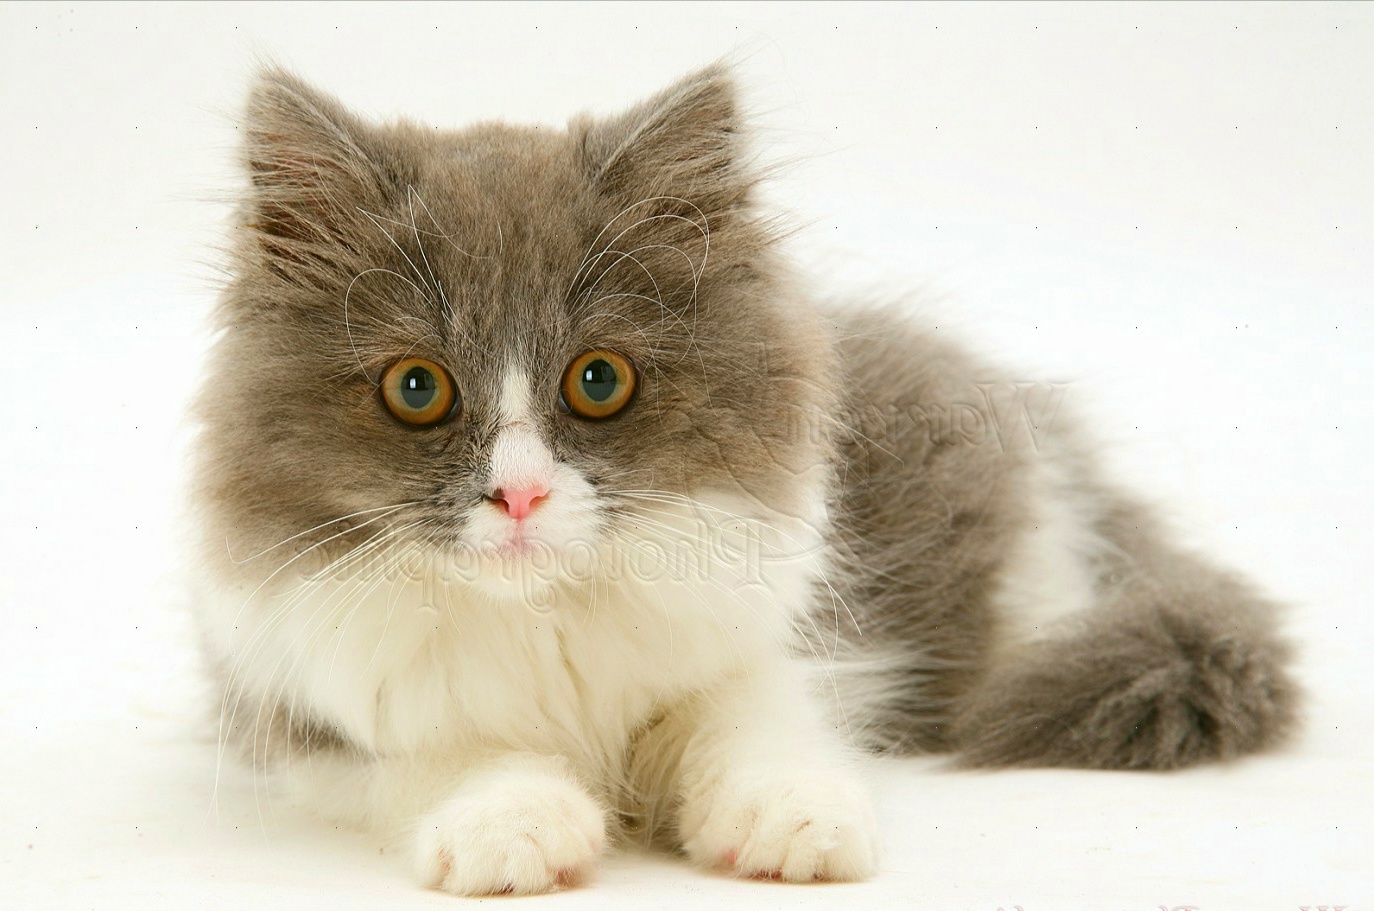 papier peint gambar kucing,chat,chats de petite à moyenne taille,félidés,moustaches,poil long britannique